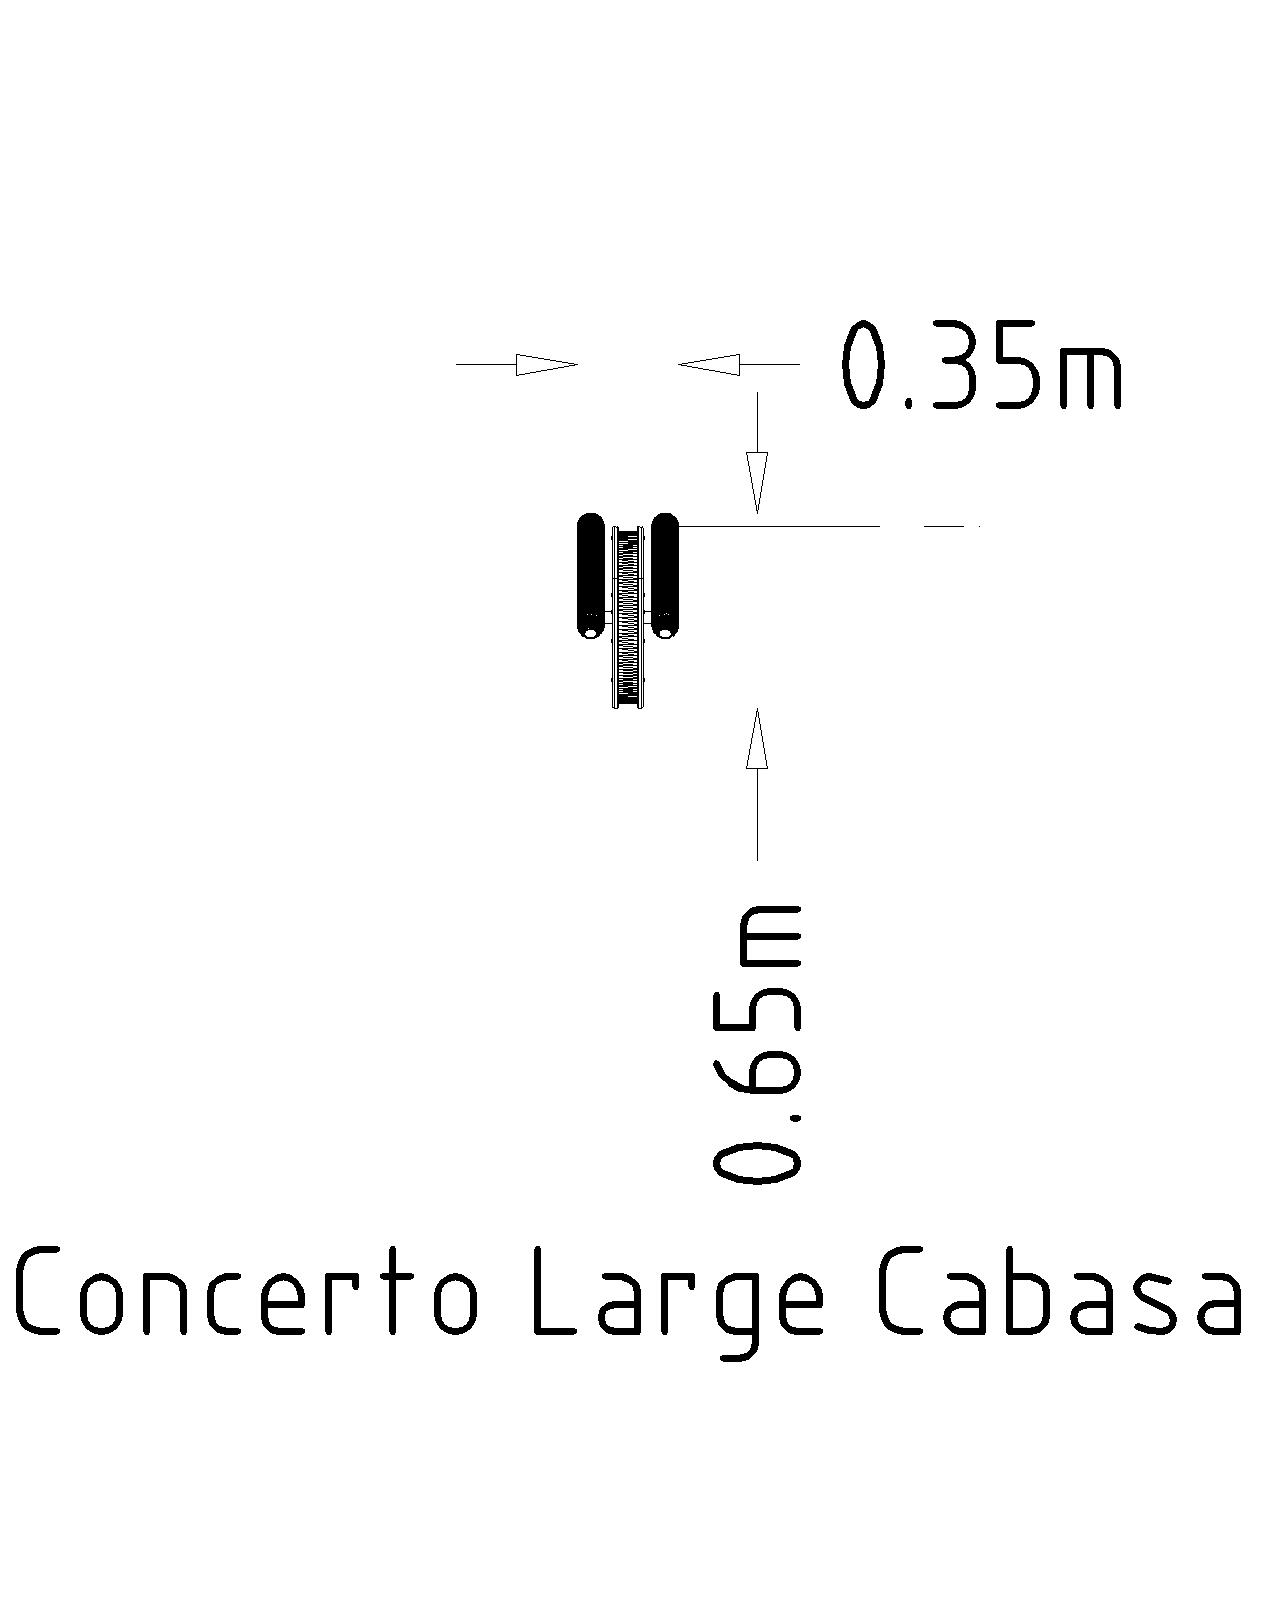 Large Cabasa